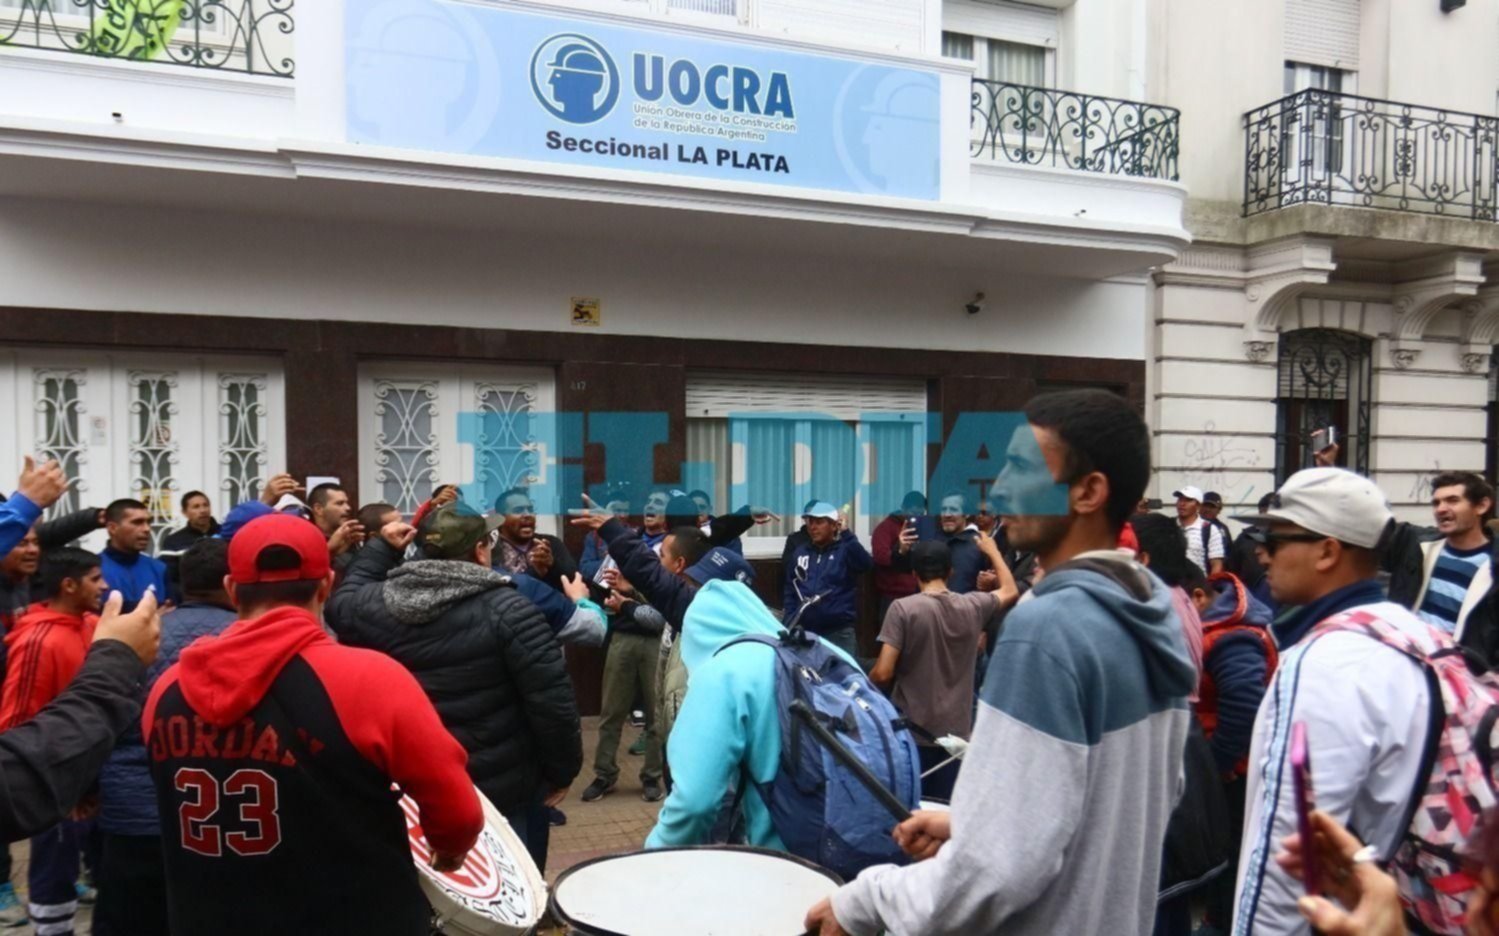 La UOCRA alerta por despidos y suspensión de trabajadores